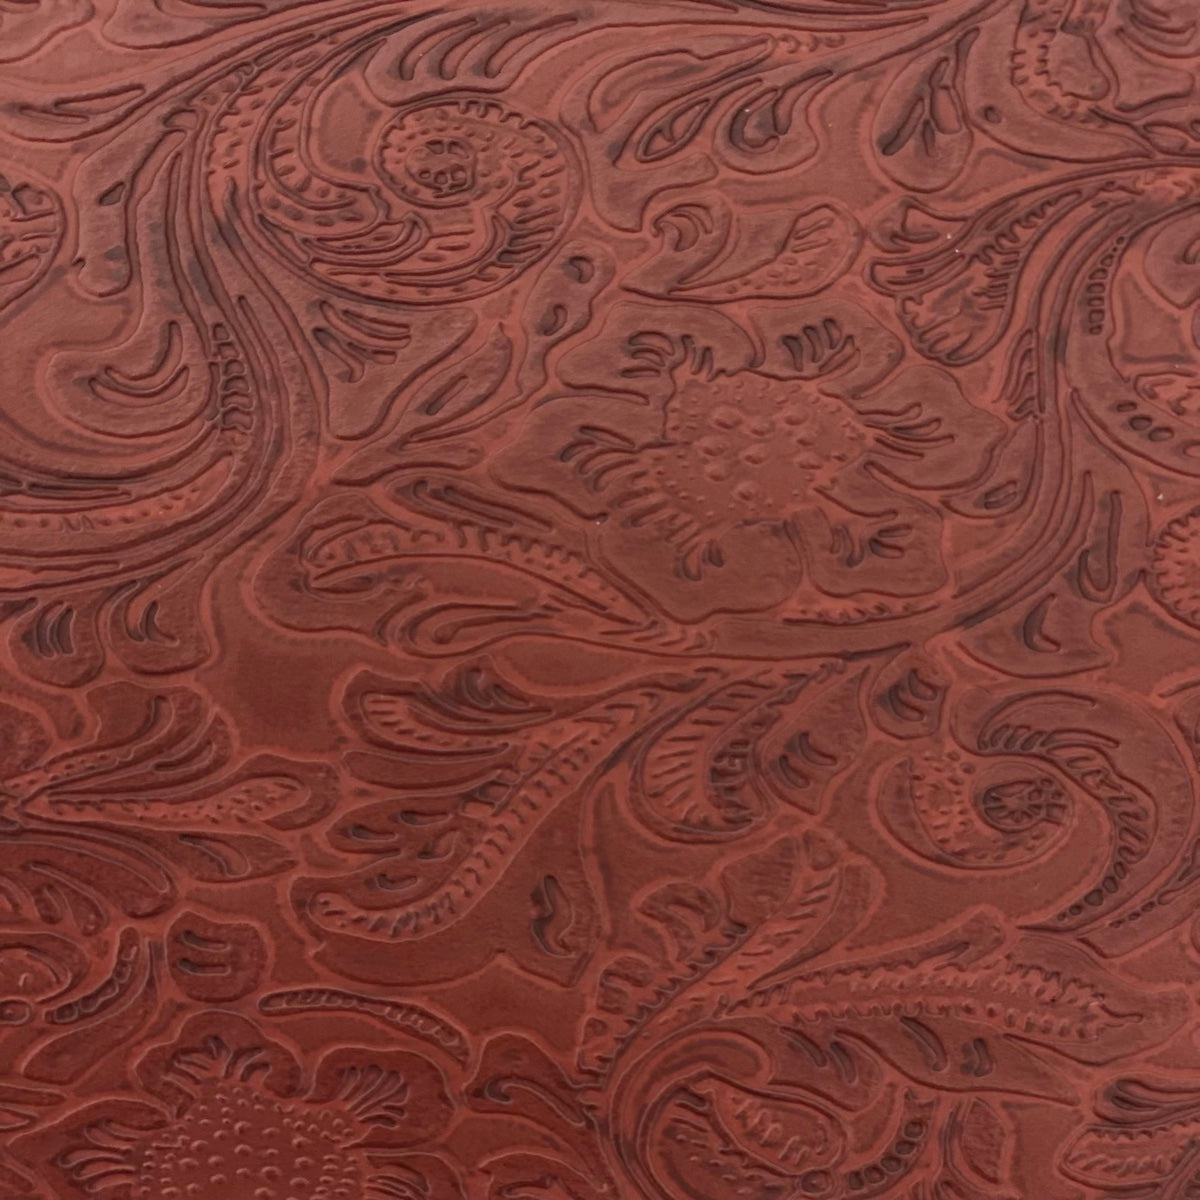 Dark Brown Wood ☆ Pattern Vinyl, Faux Leather